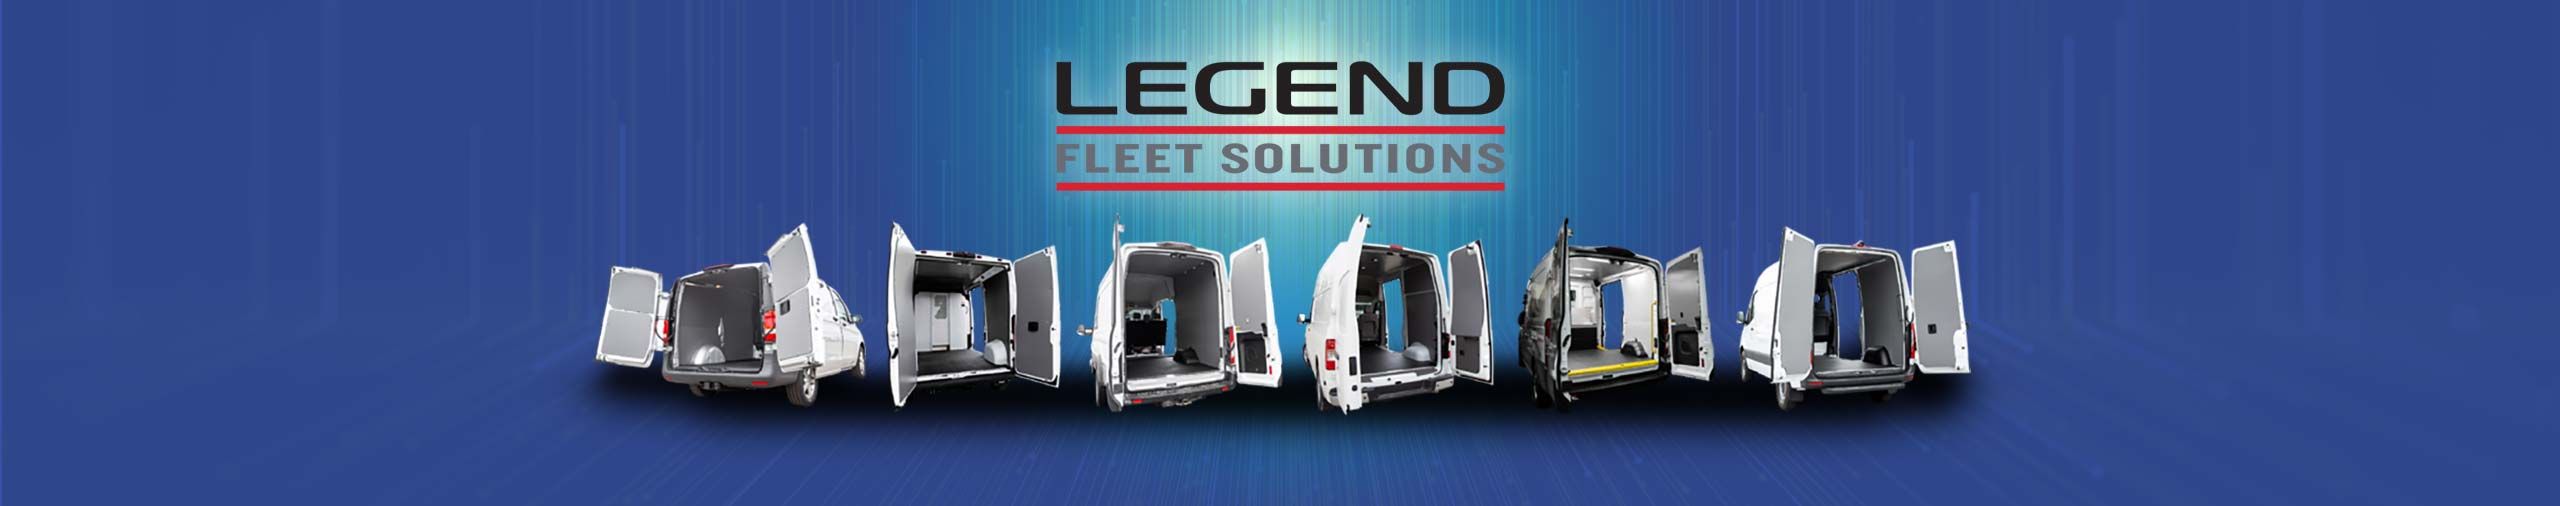 Legend Fleet Solutions Cargo Van Shelving